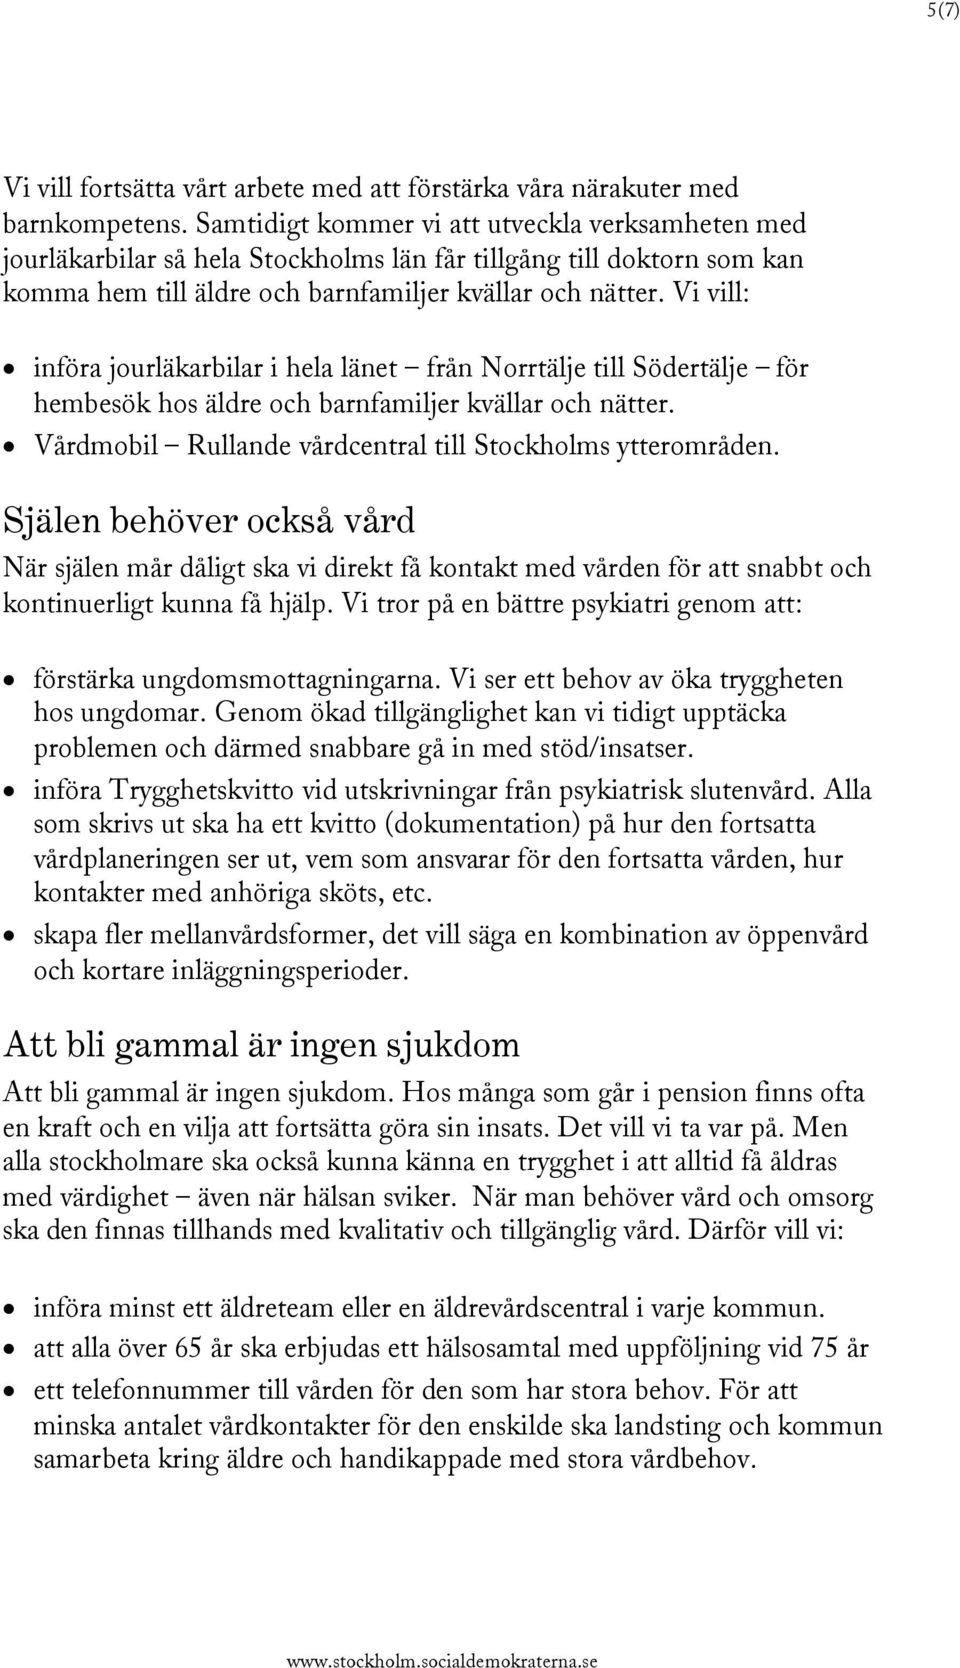 Vi vill: införa jourläkarbilar i hela länet från Norrtälje till Södertälje för hembesök hos äldre och barnfamiljer kvällar och nätter. Vårdmobil Rullande vårdcentral till Stockholms ytterområden.